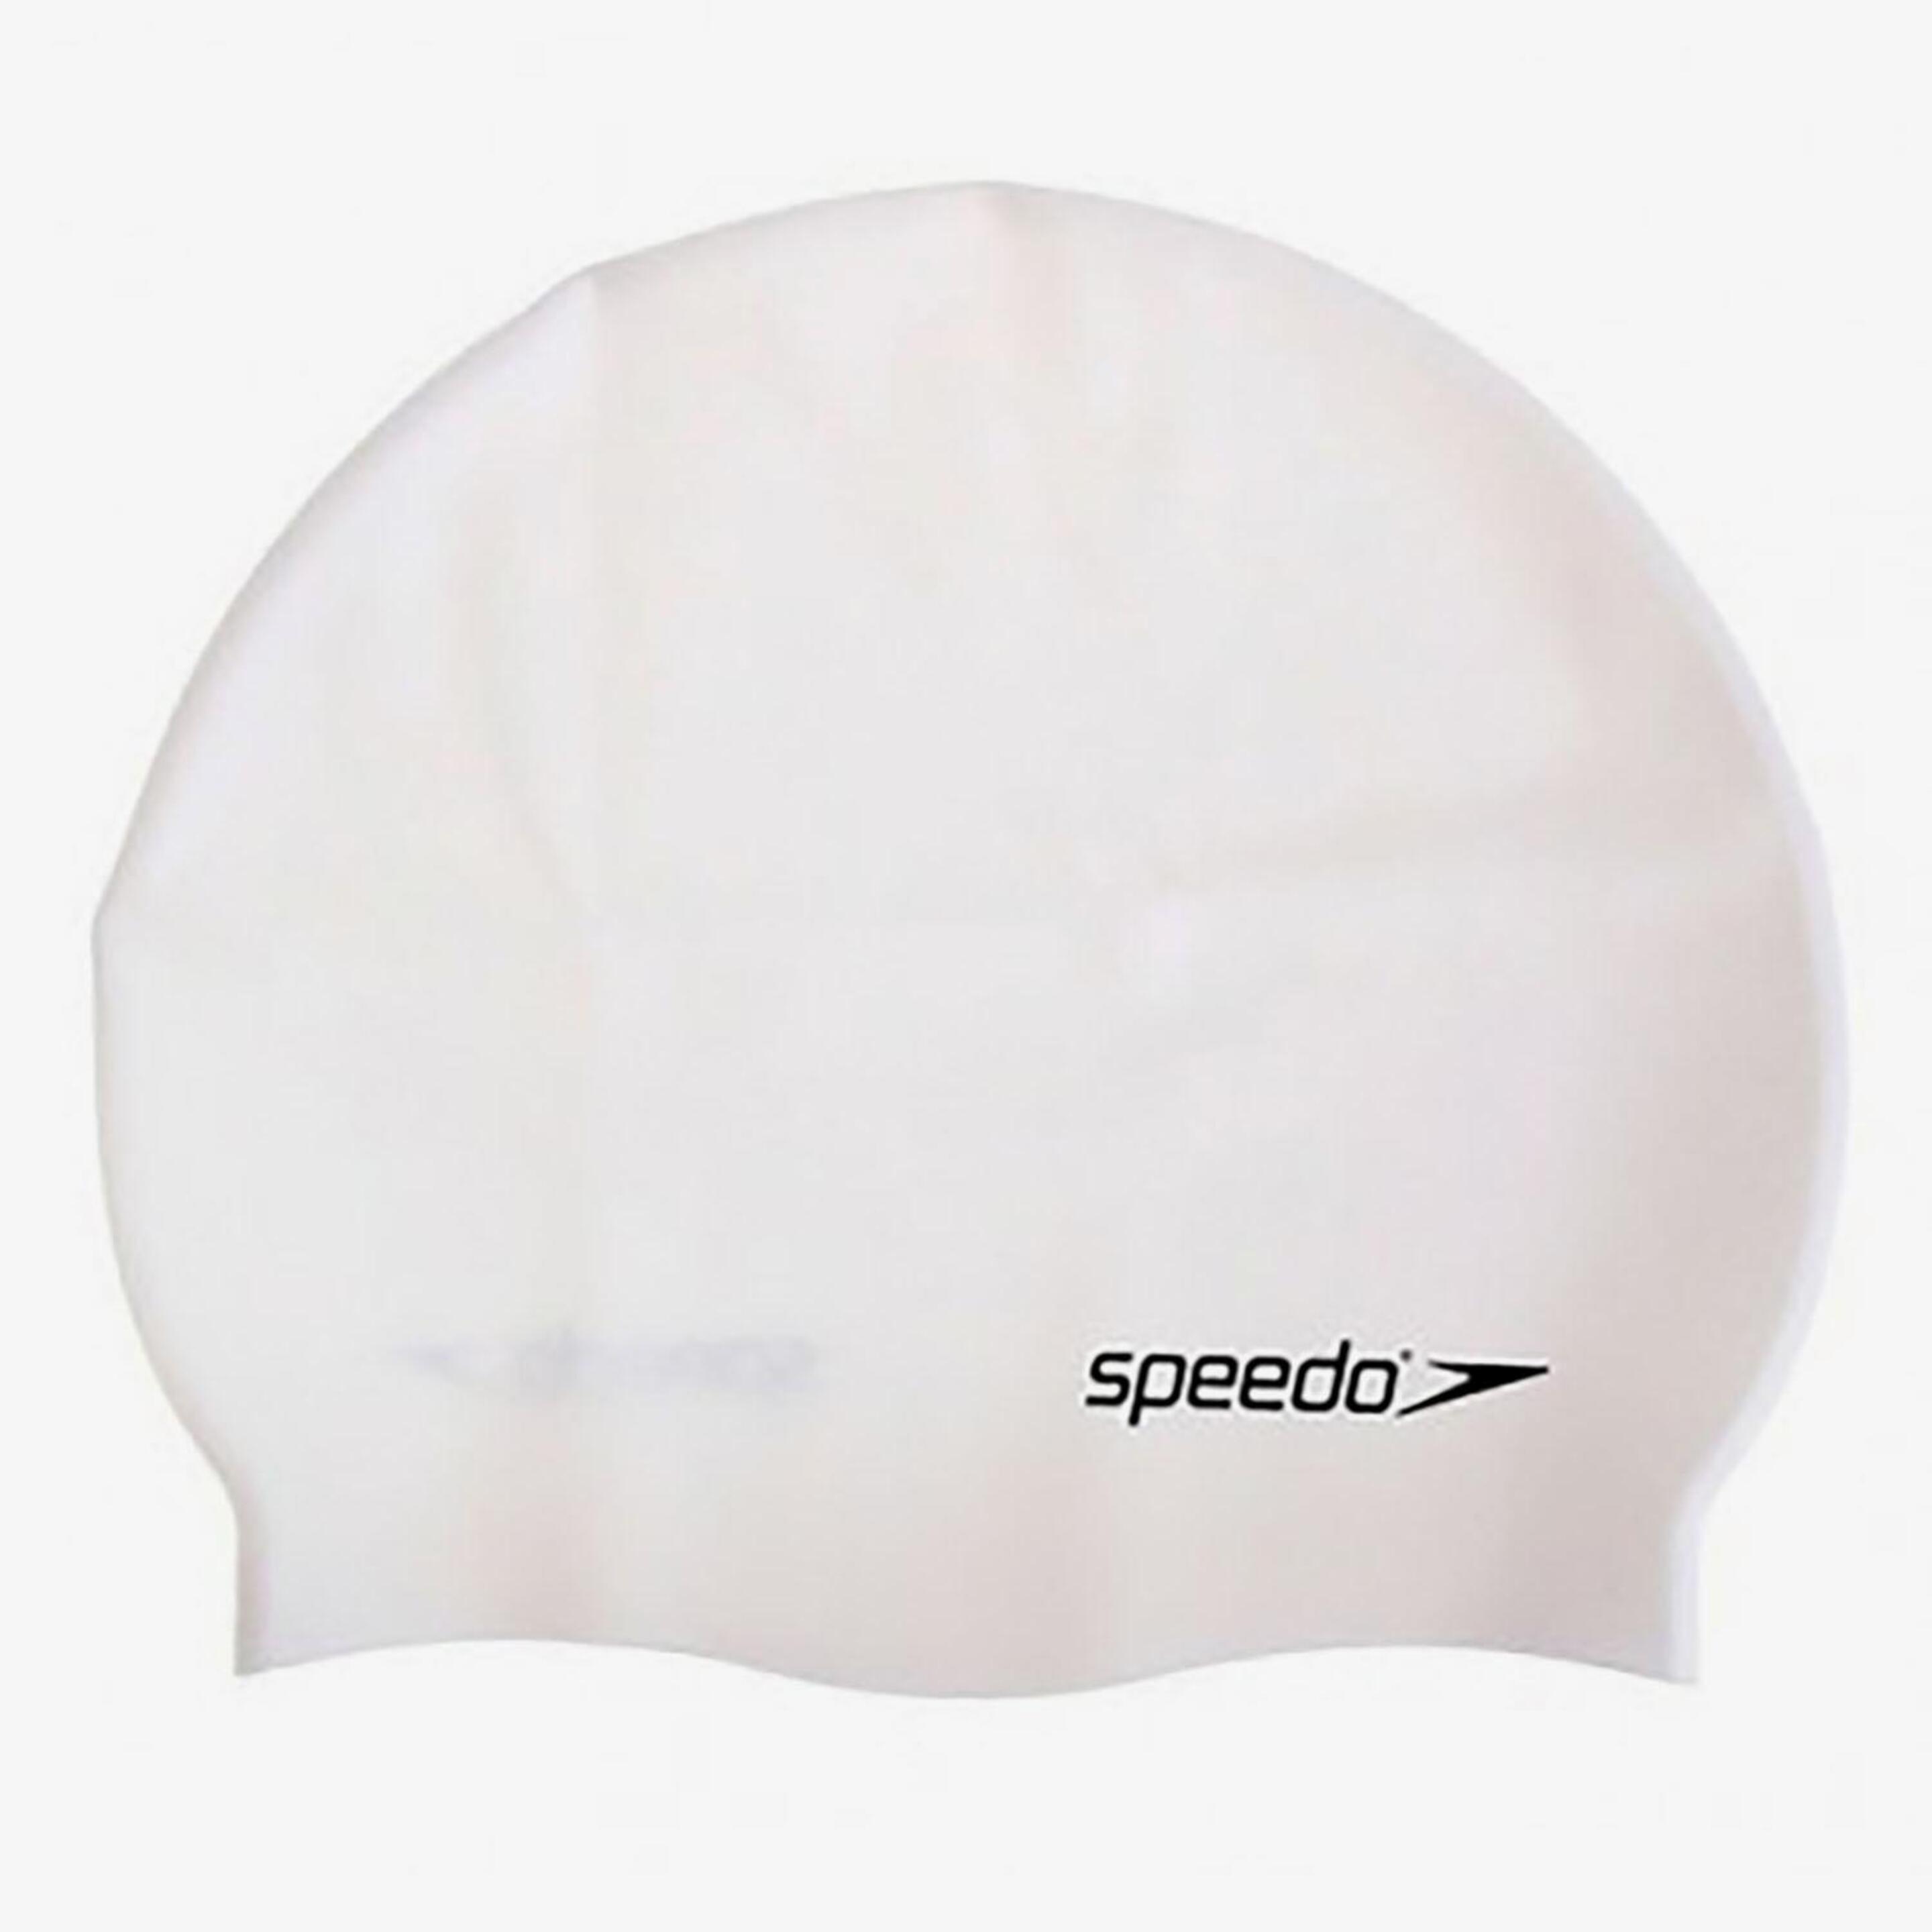 Speedo Speedo - blanco - Gorro Unisex